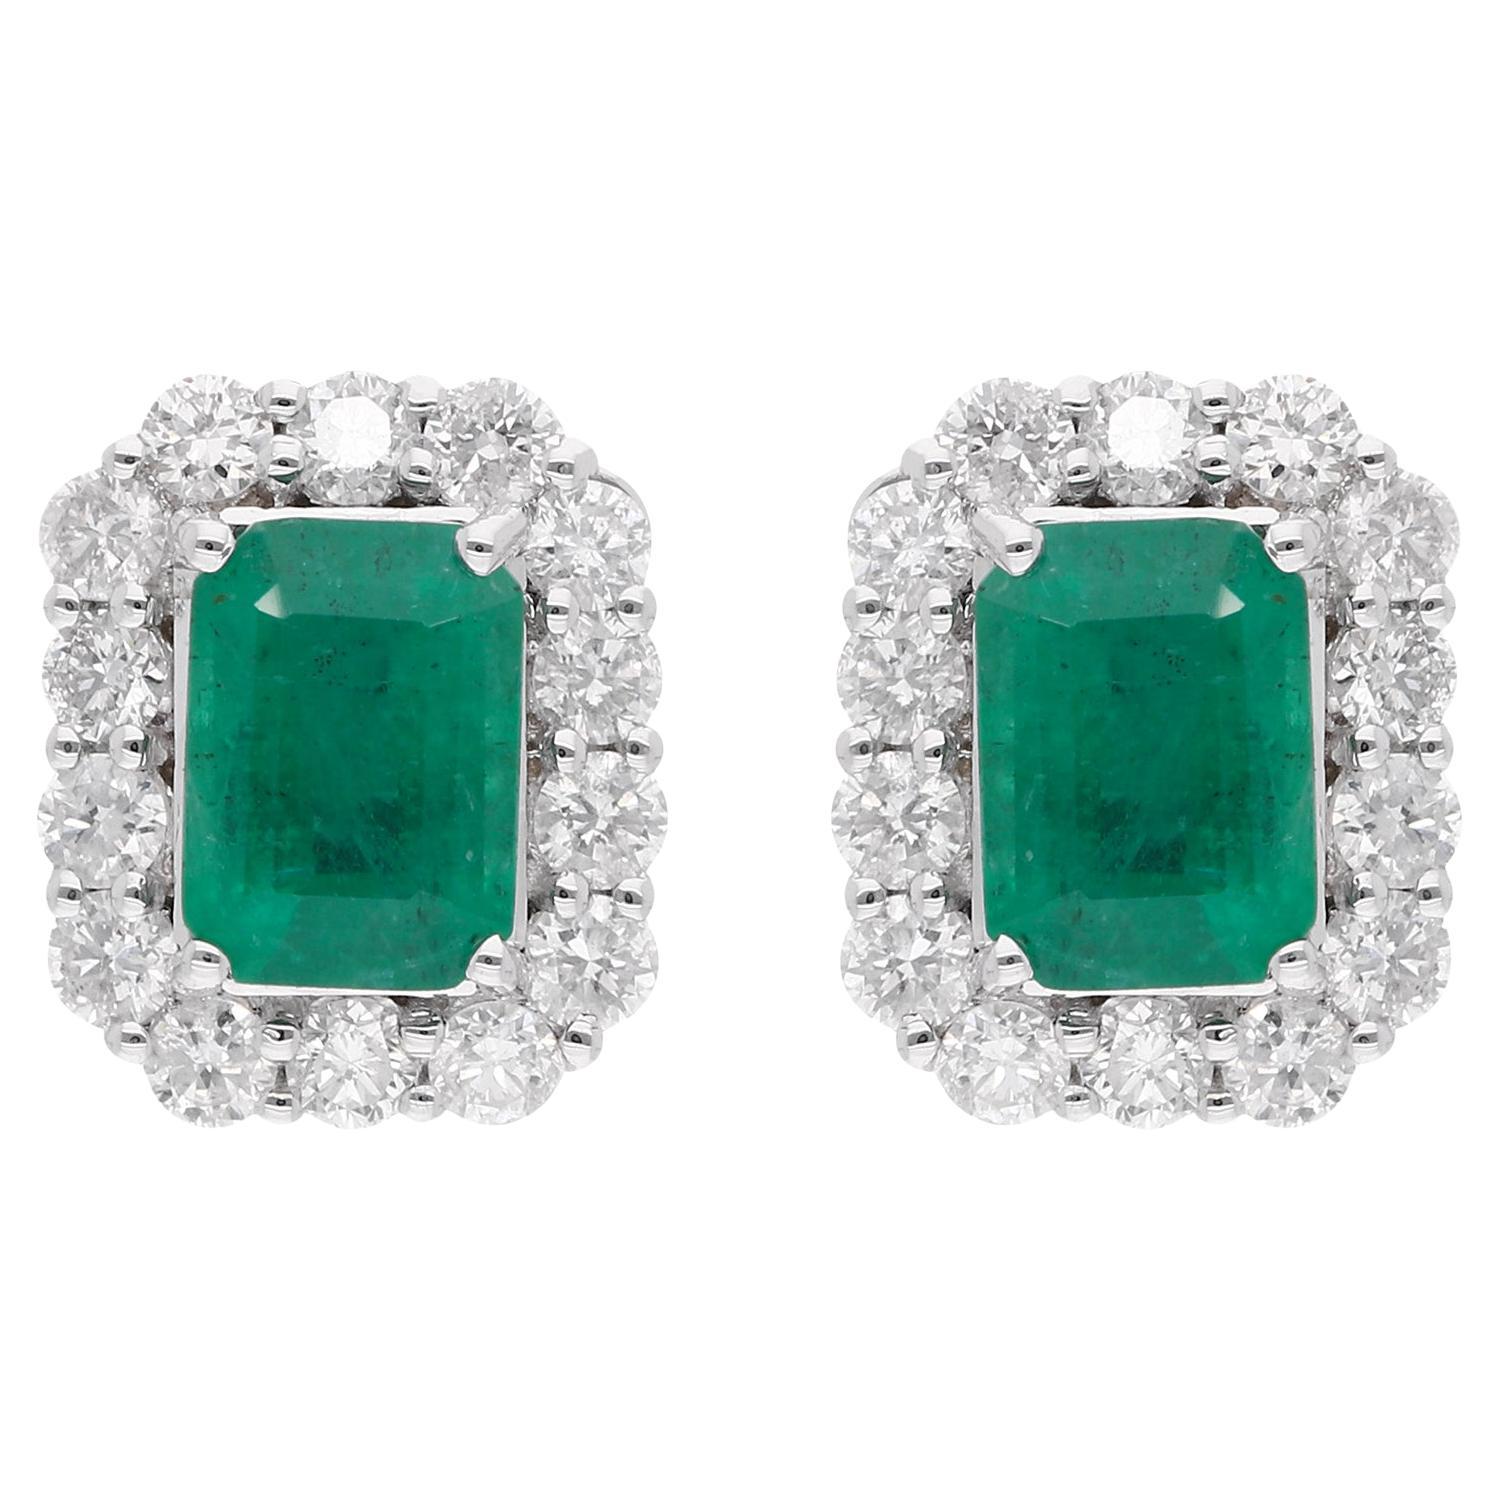 Zambian Emerald Gemstone Stud Earrings Diamond Pave 18 Karat White Gold Jewelry